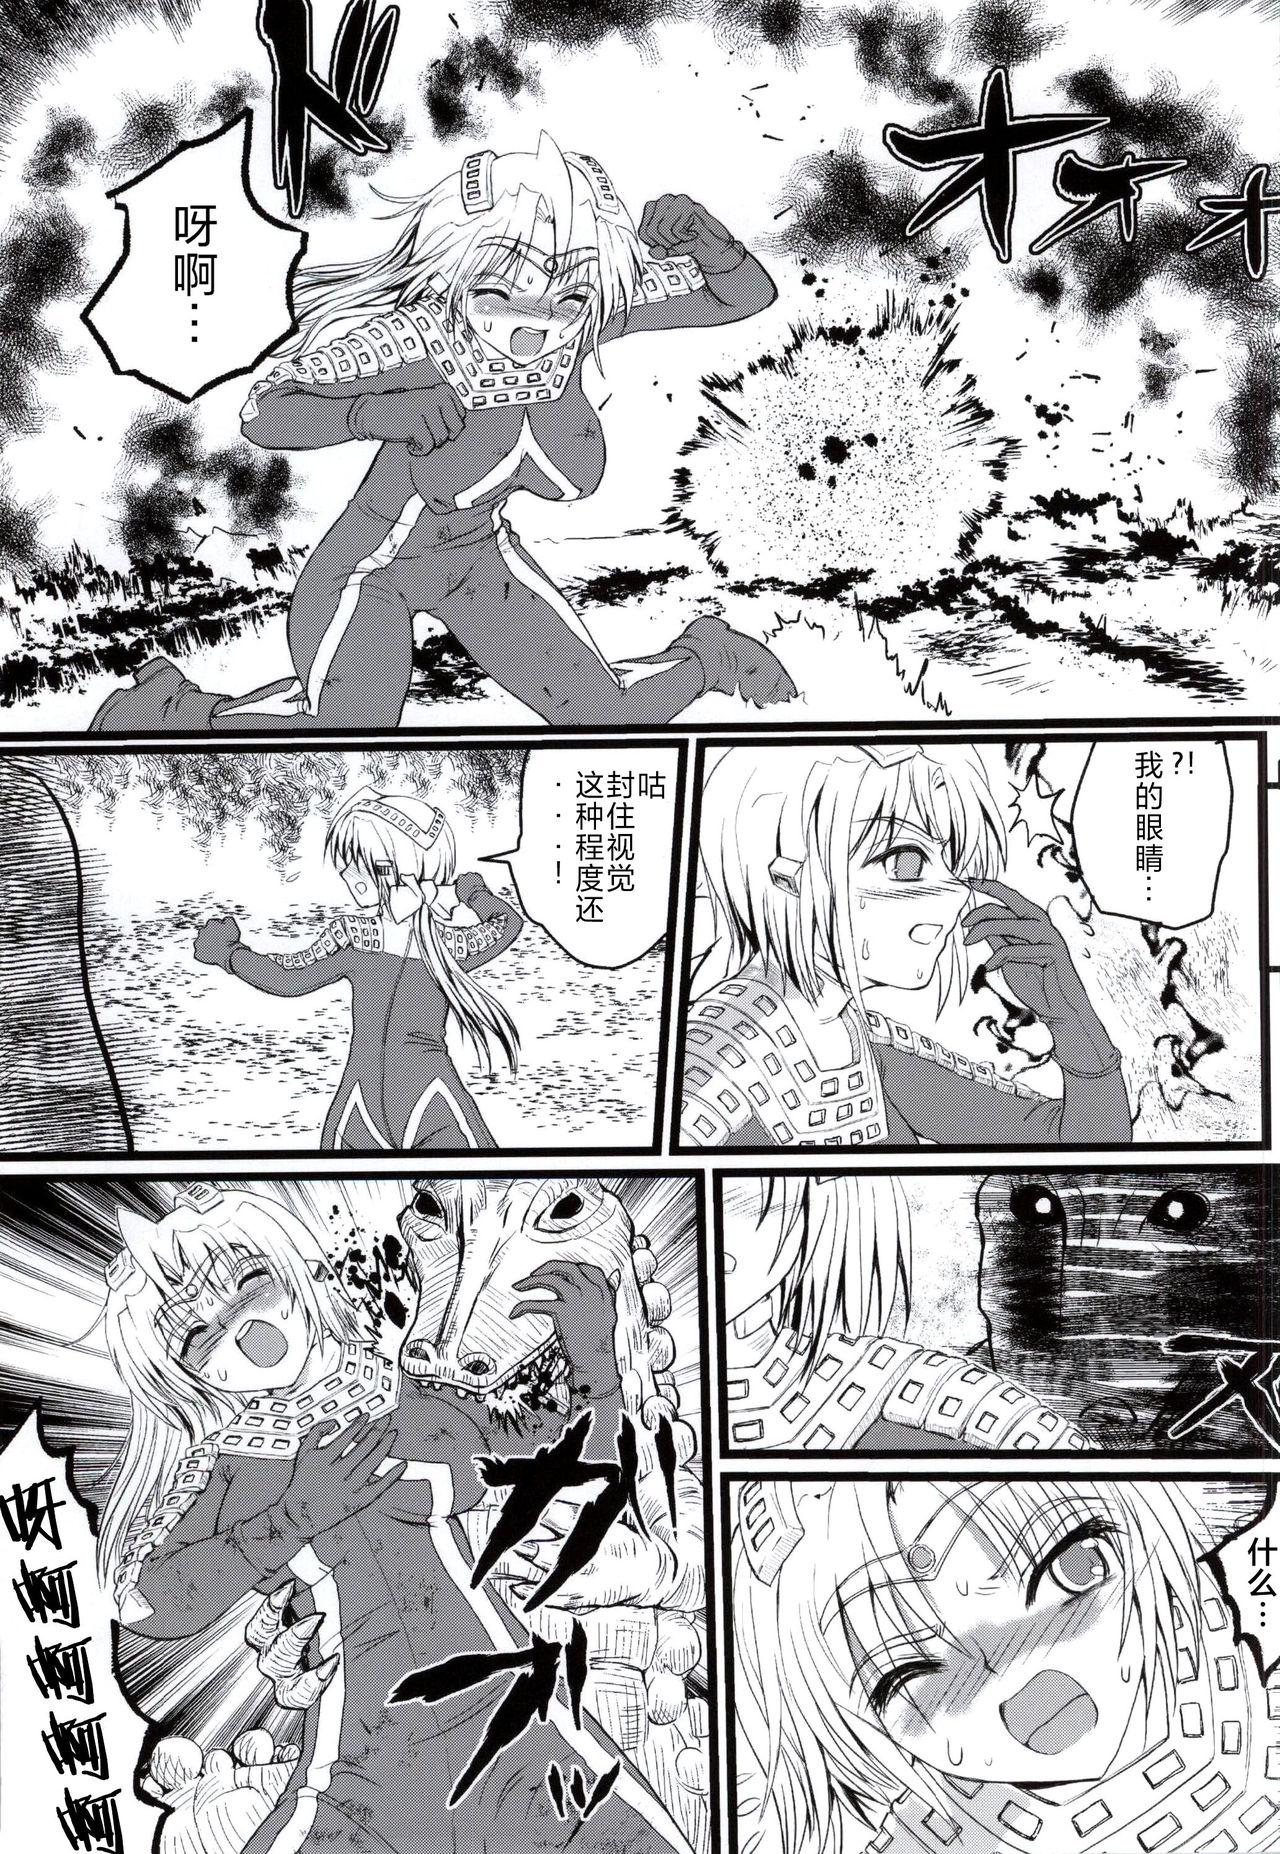 Hot Fuck Ultra Nanako Zettaizetsumei! Vol. 3 - Ultraman Boy Girl - Page 4